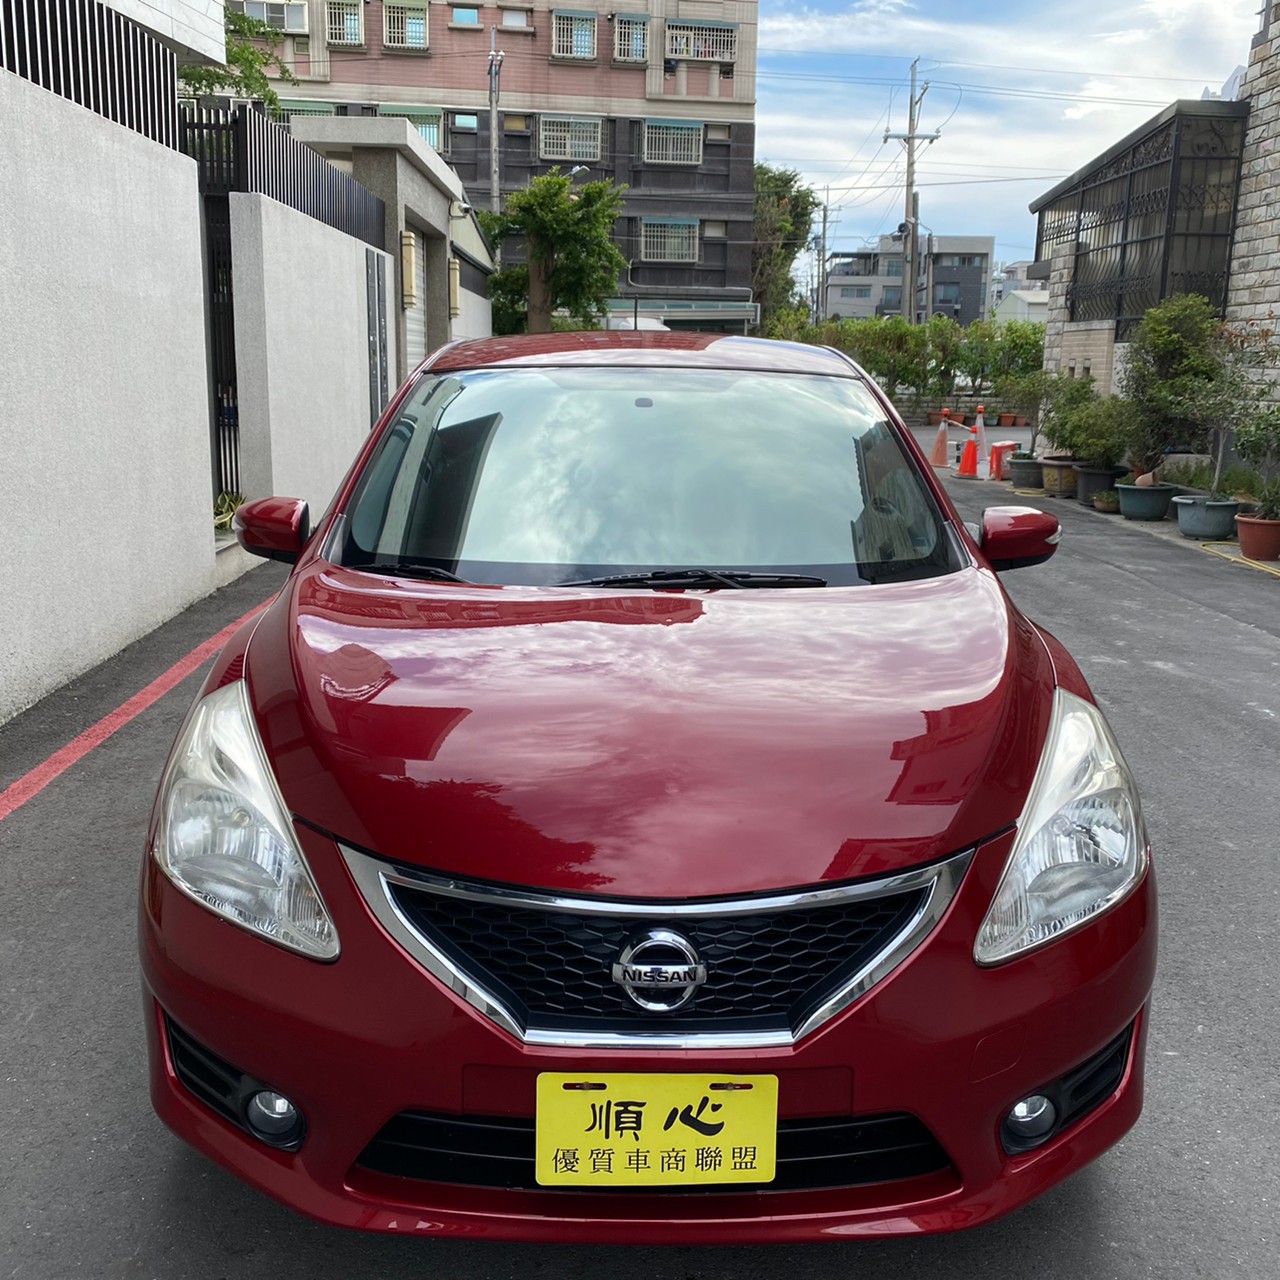 台南市三立國際汽車有限公司中古車的價格 Findcar 找車網